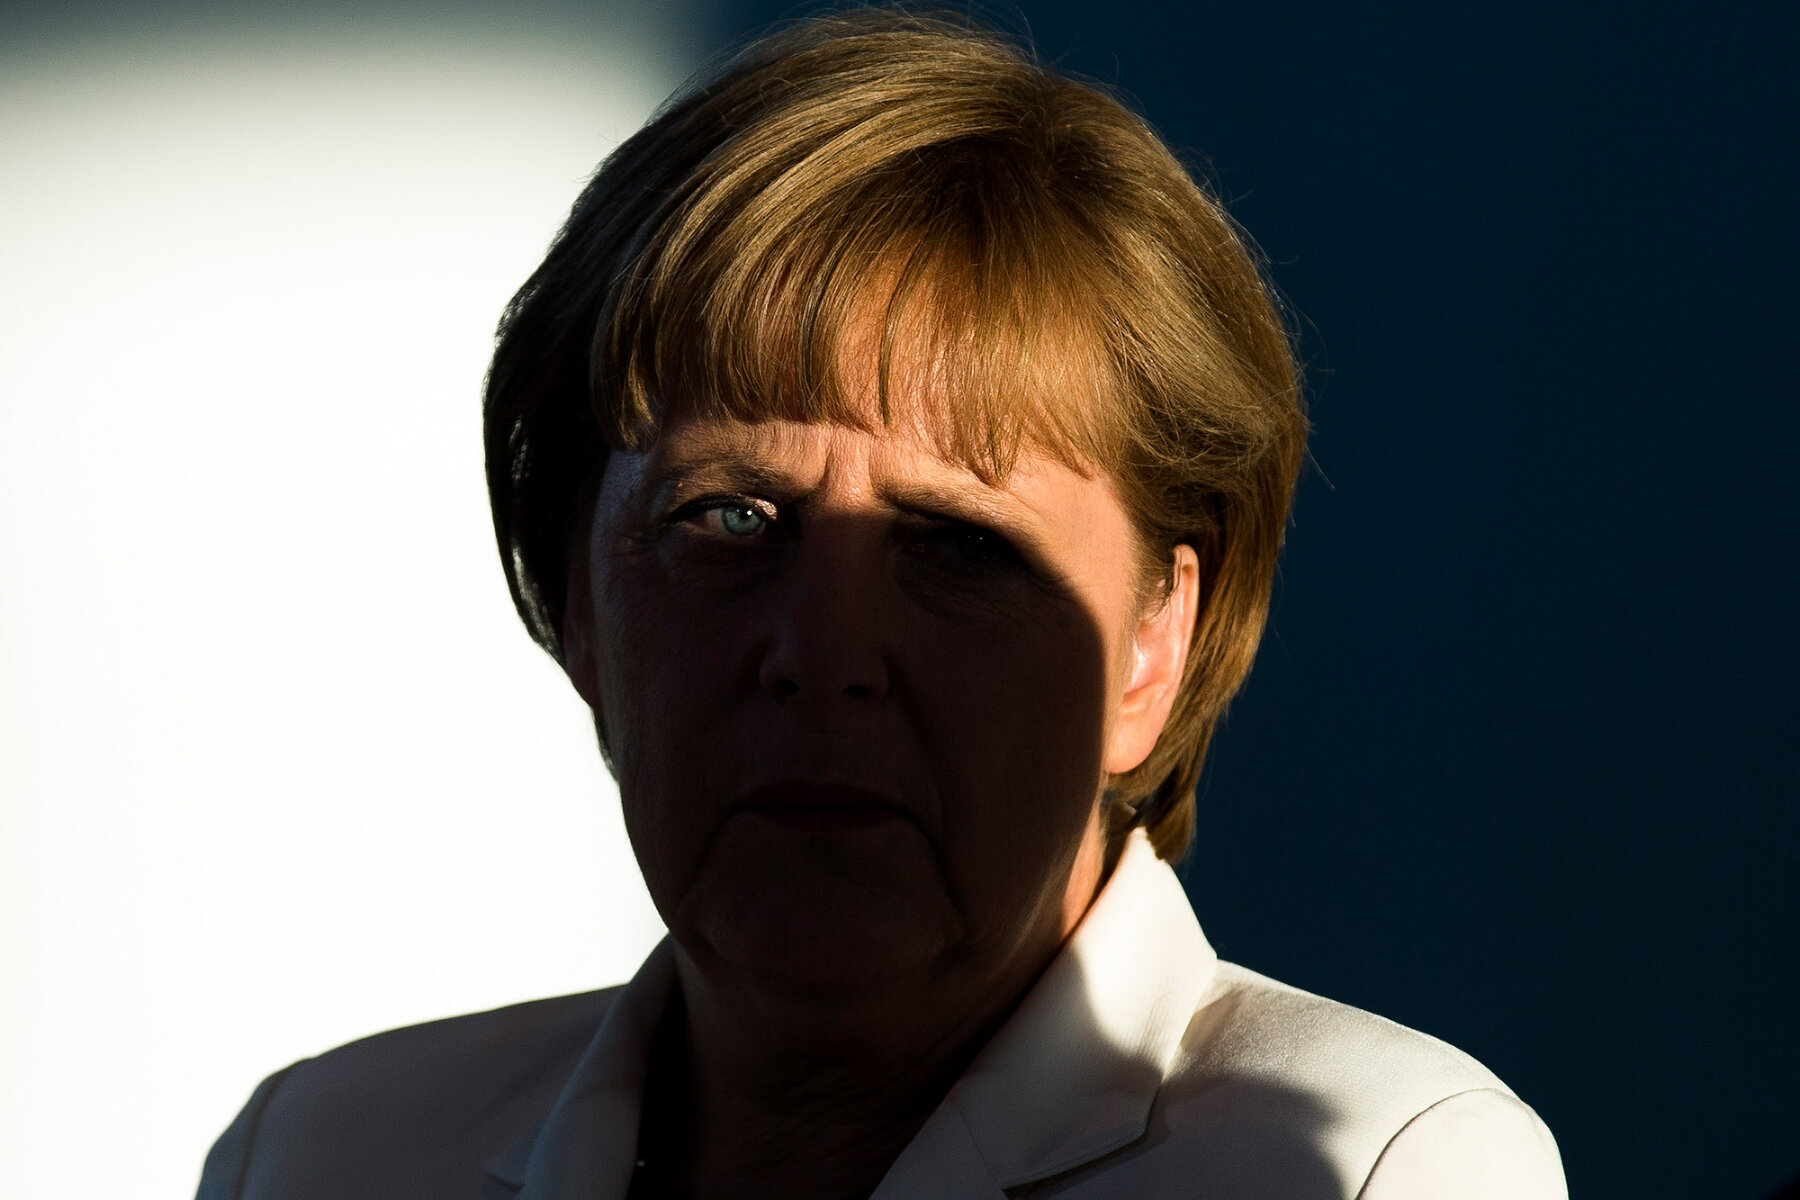 <p>Меркель слушает выступление Франсуа Олланда перед рабочей встречей по разрешению европейского экономического кризиса, Берлин, 23 августа 2012 года</p>

<p>Меркель все время своего правления следовала политике сплочения ЕС, а после мирового экономического кризиса 2008-2009 годов возглавила восстановление Европы и стабилизацию евро. Германия давала крупные займы странам, наиболее пострадавшим от кризиса, и инициировала жесткие фискальные меры.</p>